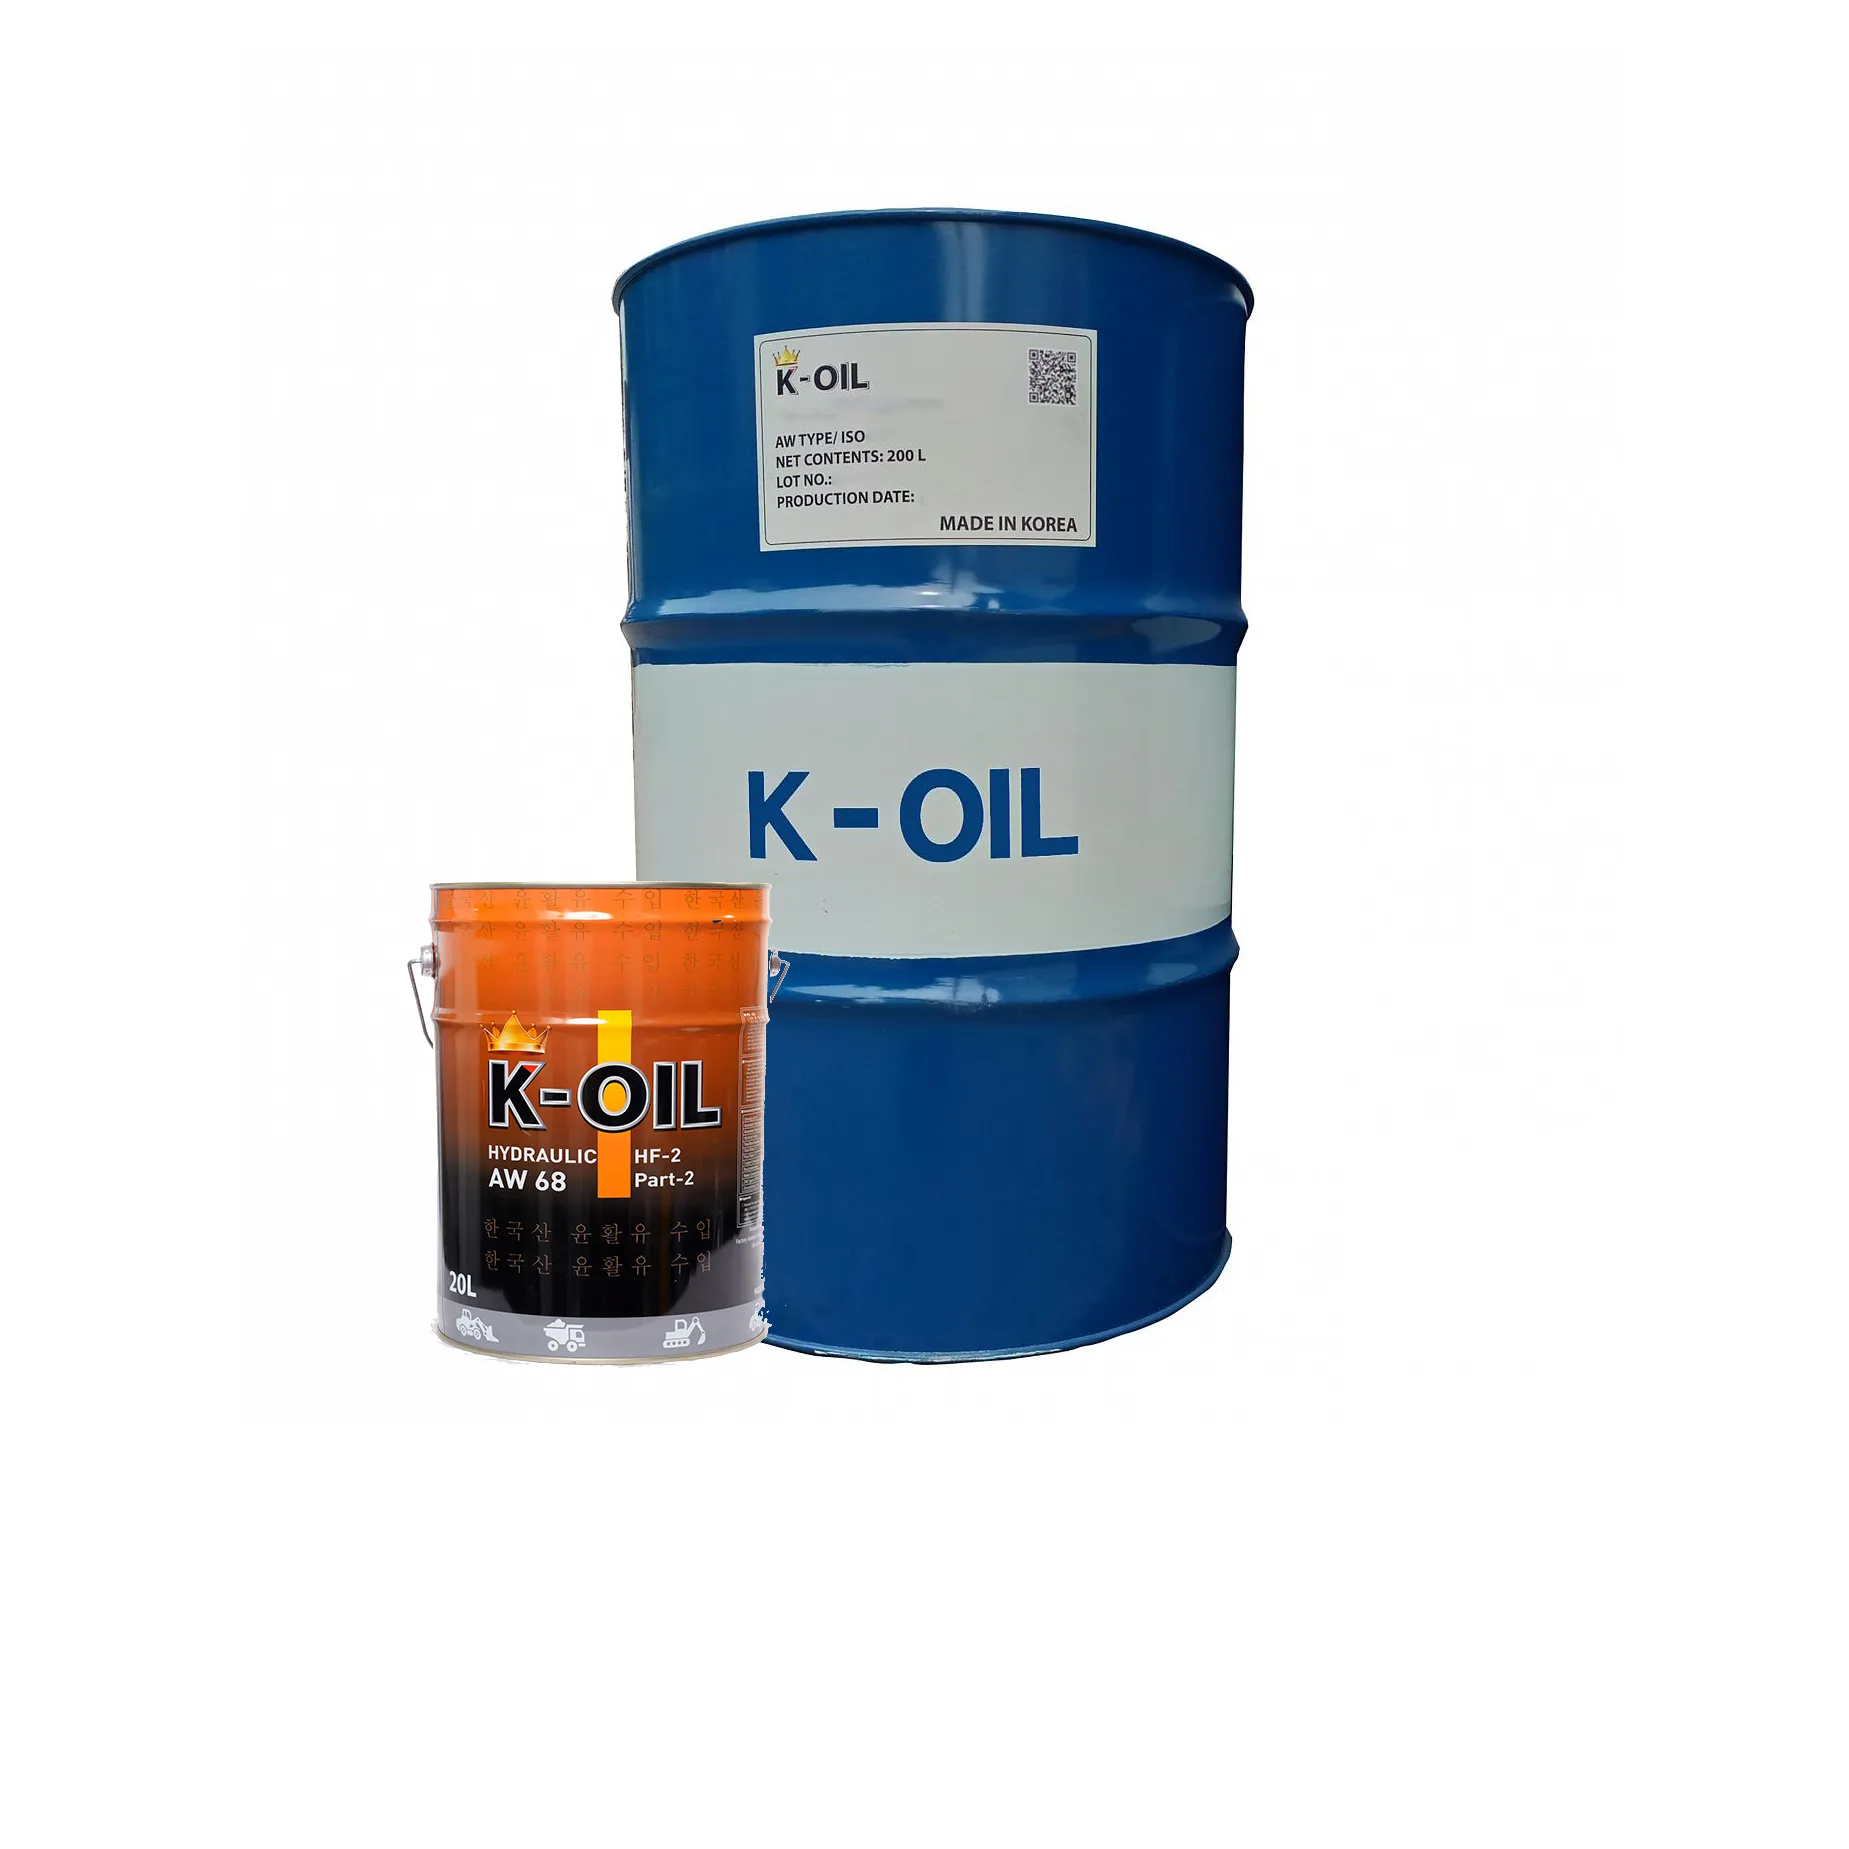 K-Oil الهيدروليكية سلسلة الزيت الهيدروليكي AW 46 انخفاض الودائع تشكيل النفط صفقة جيدة للاستخدام الصناعي فيتنام